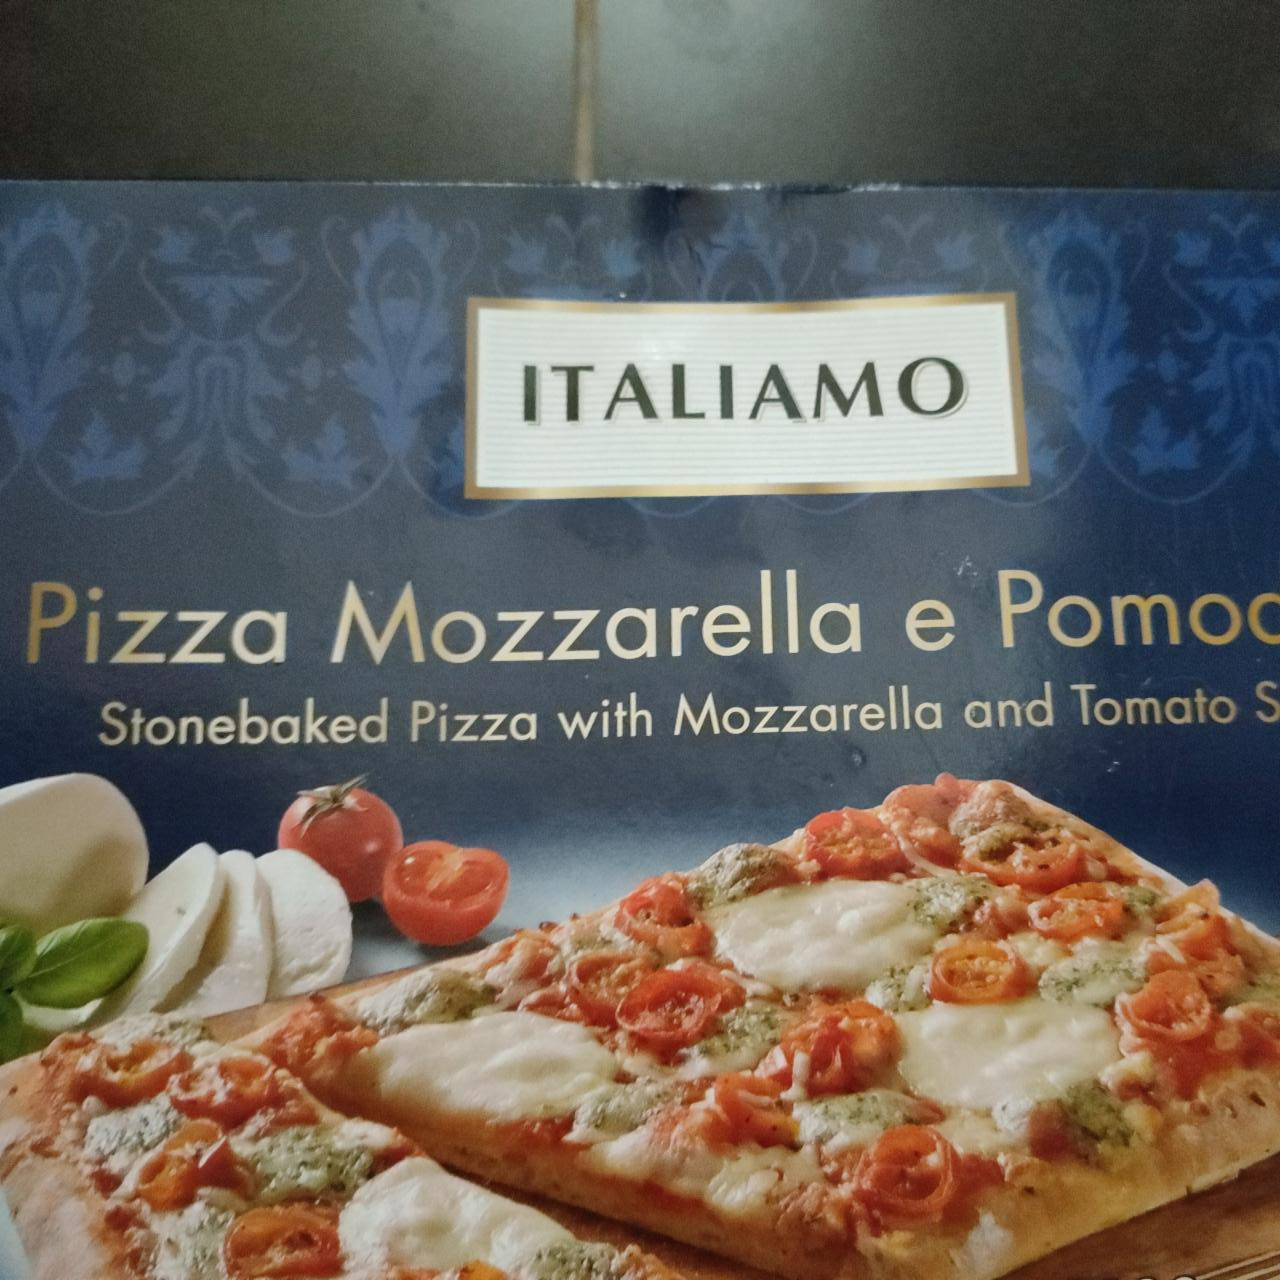 Fotografie - Pizza Mozzarella e Pomodoro Italiamo